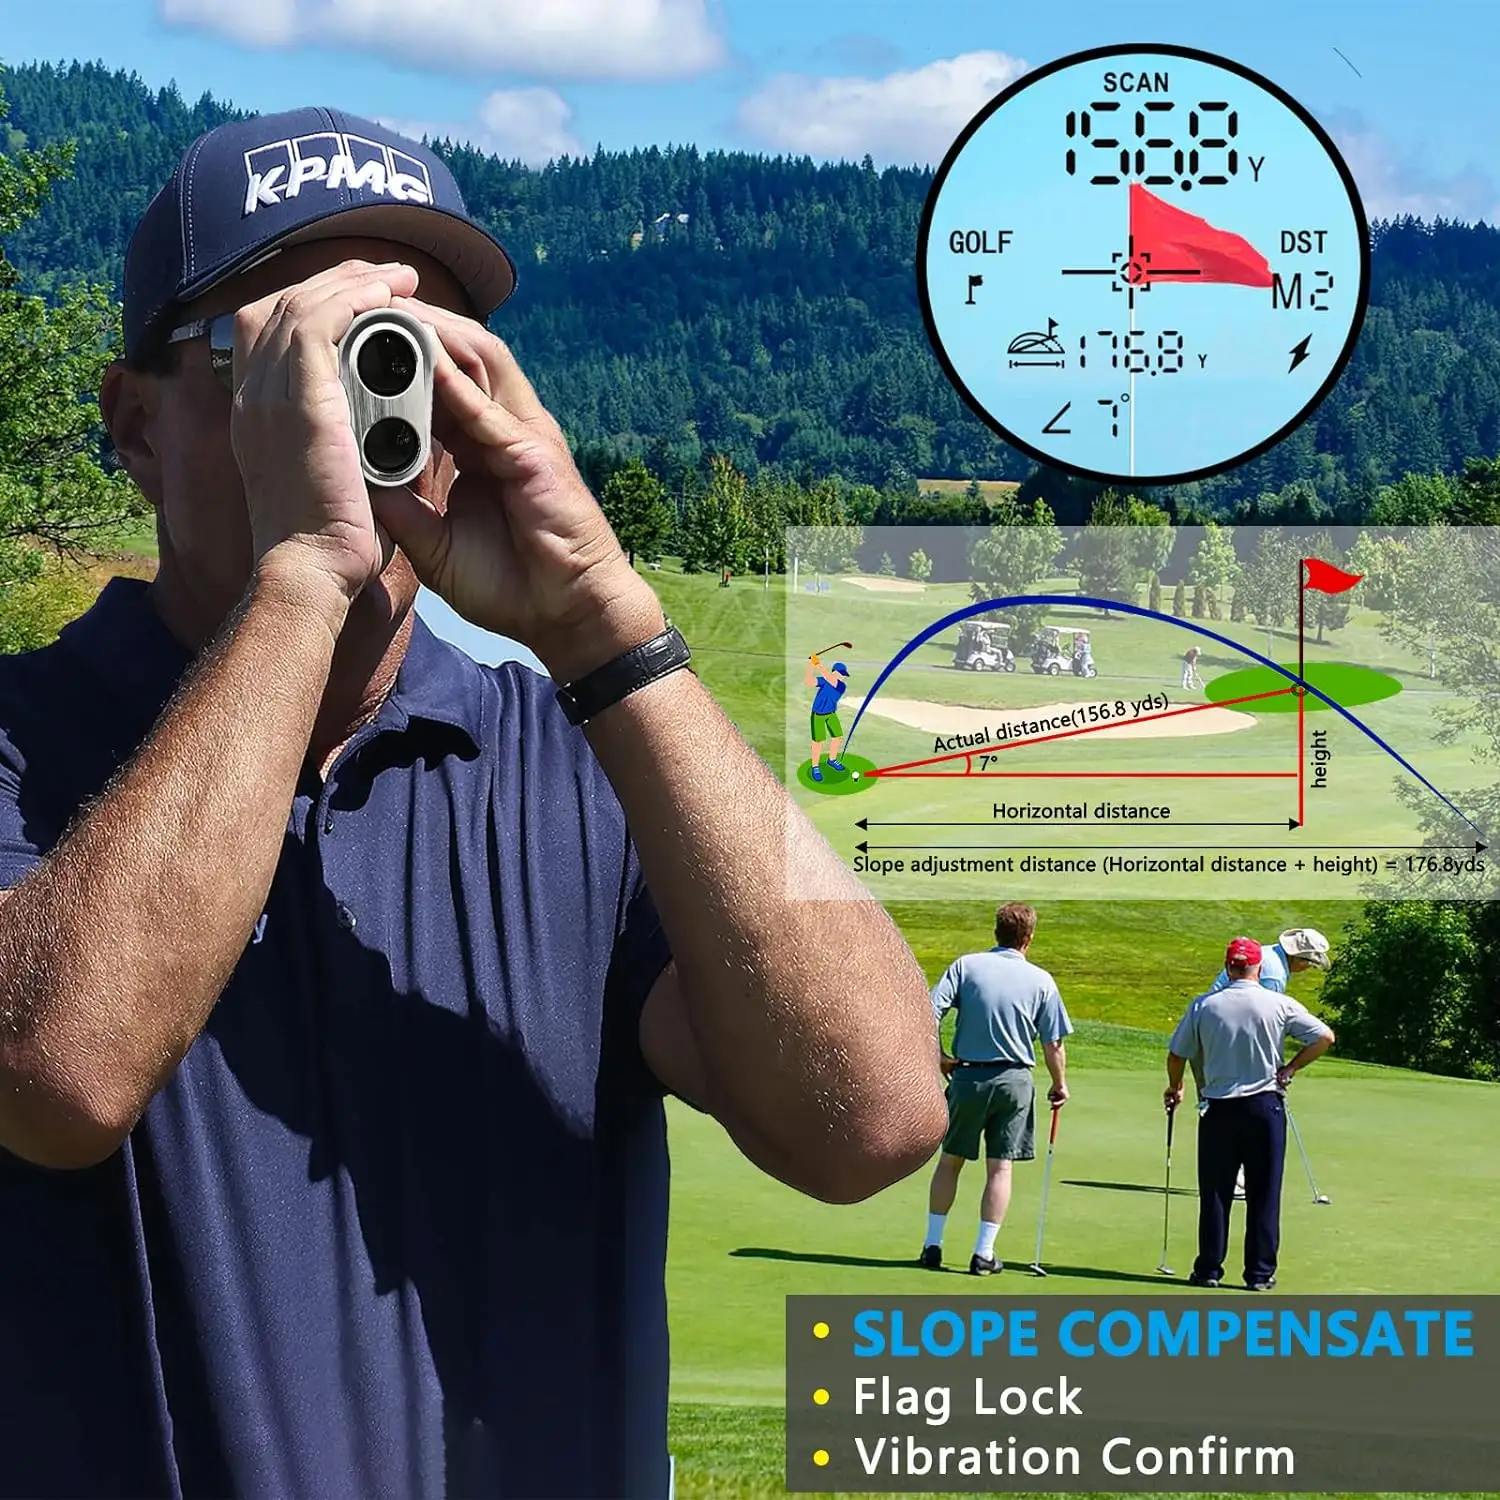 Entfernungs messbereich 600m Laser-Entfernungs messer Handheld-Entfernungs messer Golf Laser-Entfernungs messer